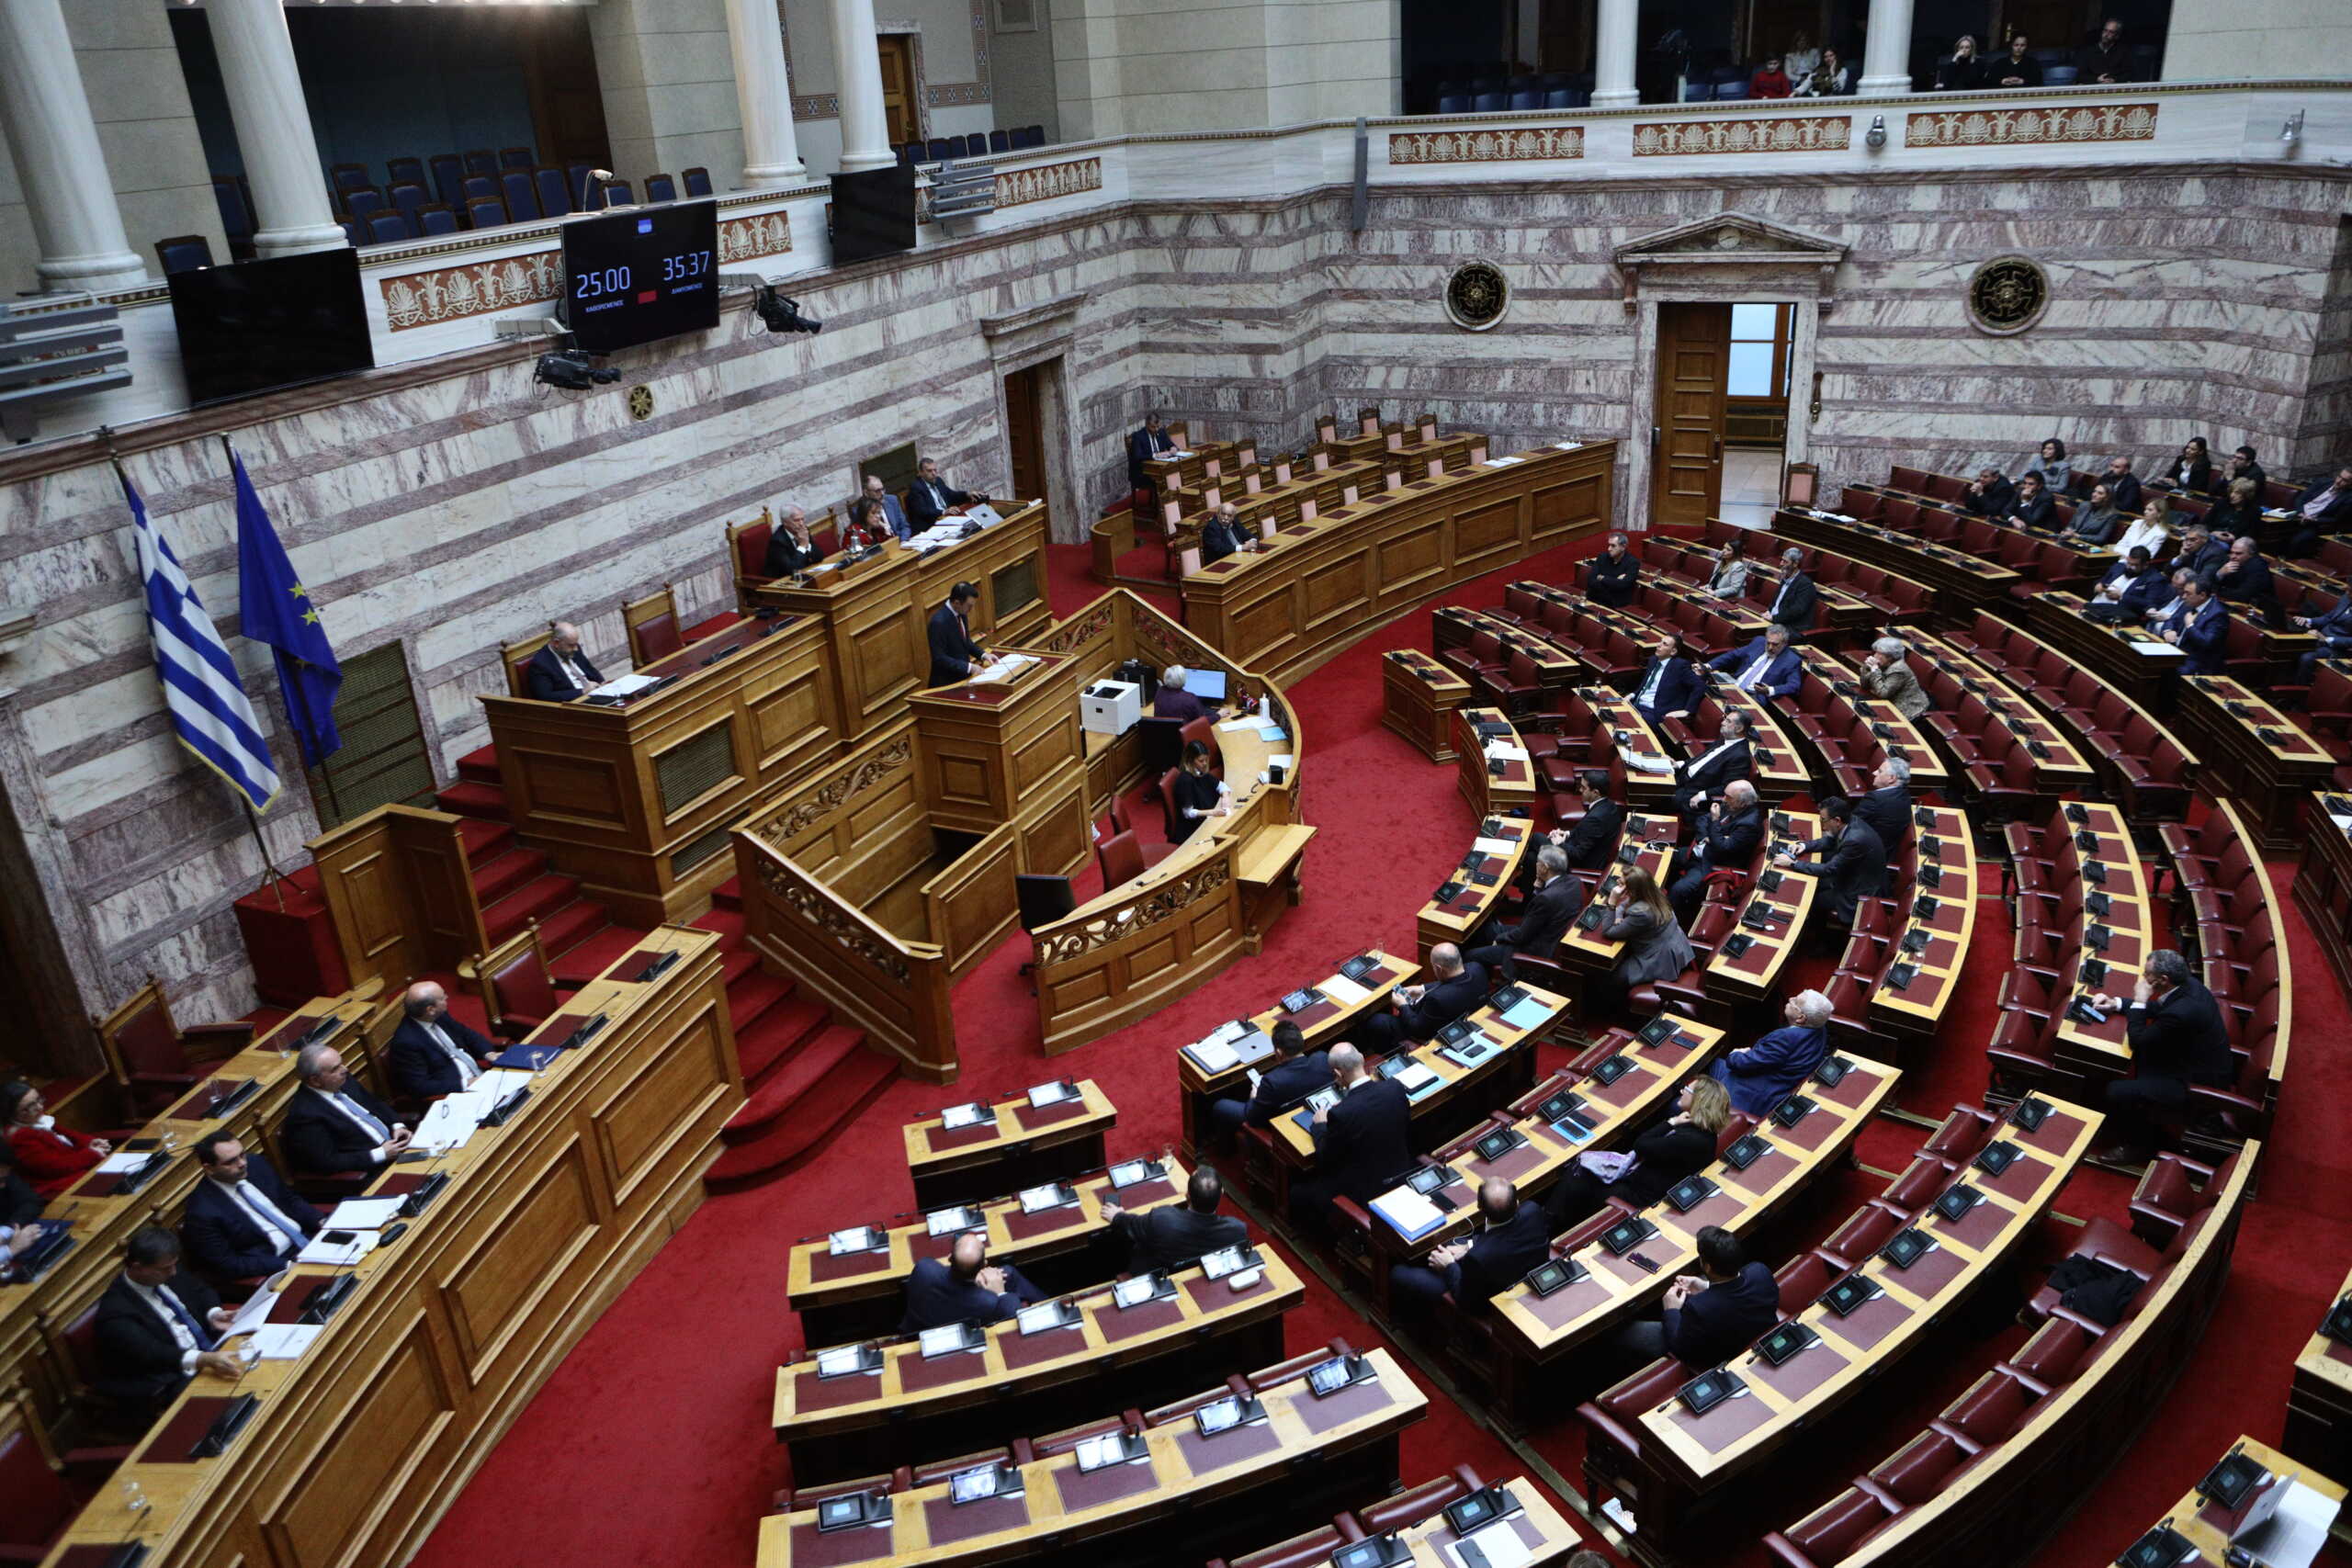 Στην Βουλή σήμερα η τροπολογία Καιρίδη για τους μετανάστες – Οι αντιδράσεις μέσα από την ΝΔ και η στάση Σαμαρά